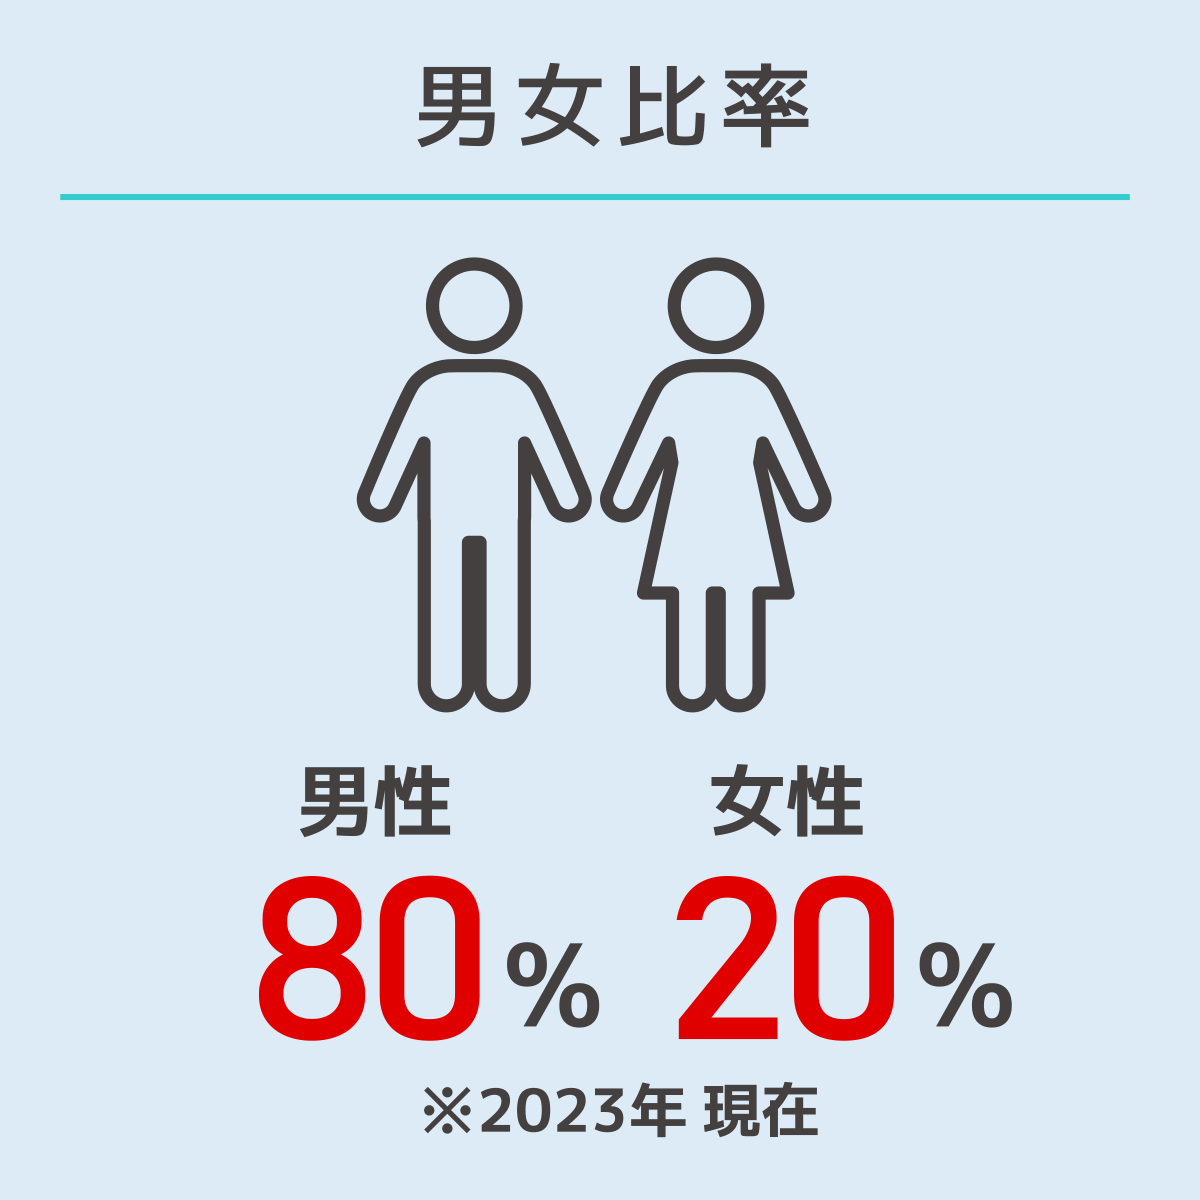 男女比率：男性80%、女性20%